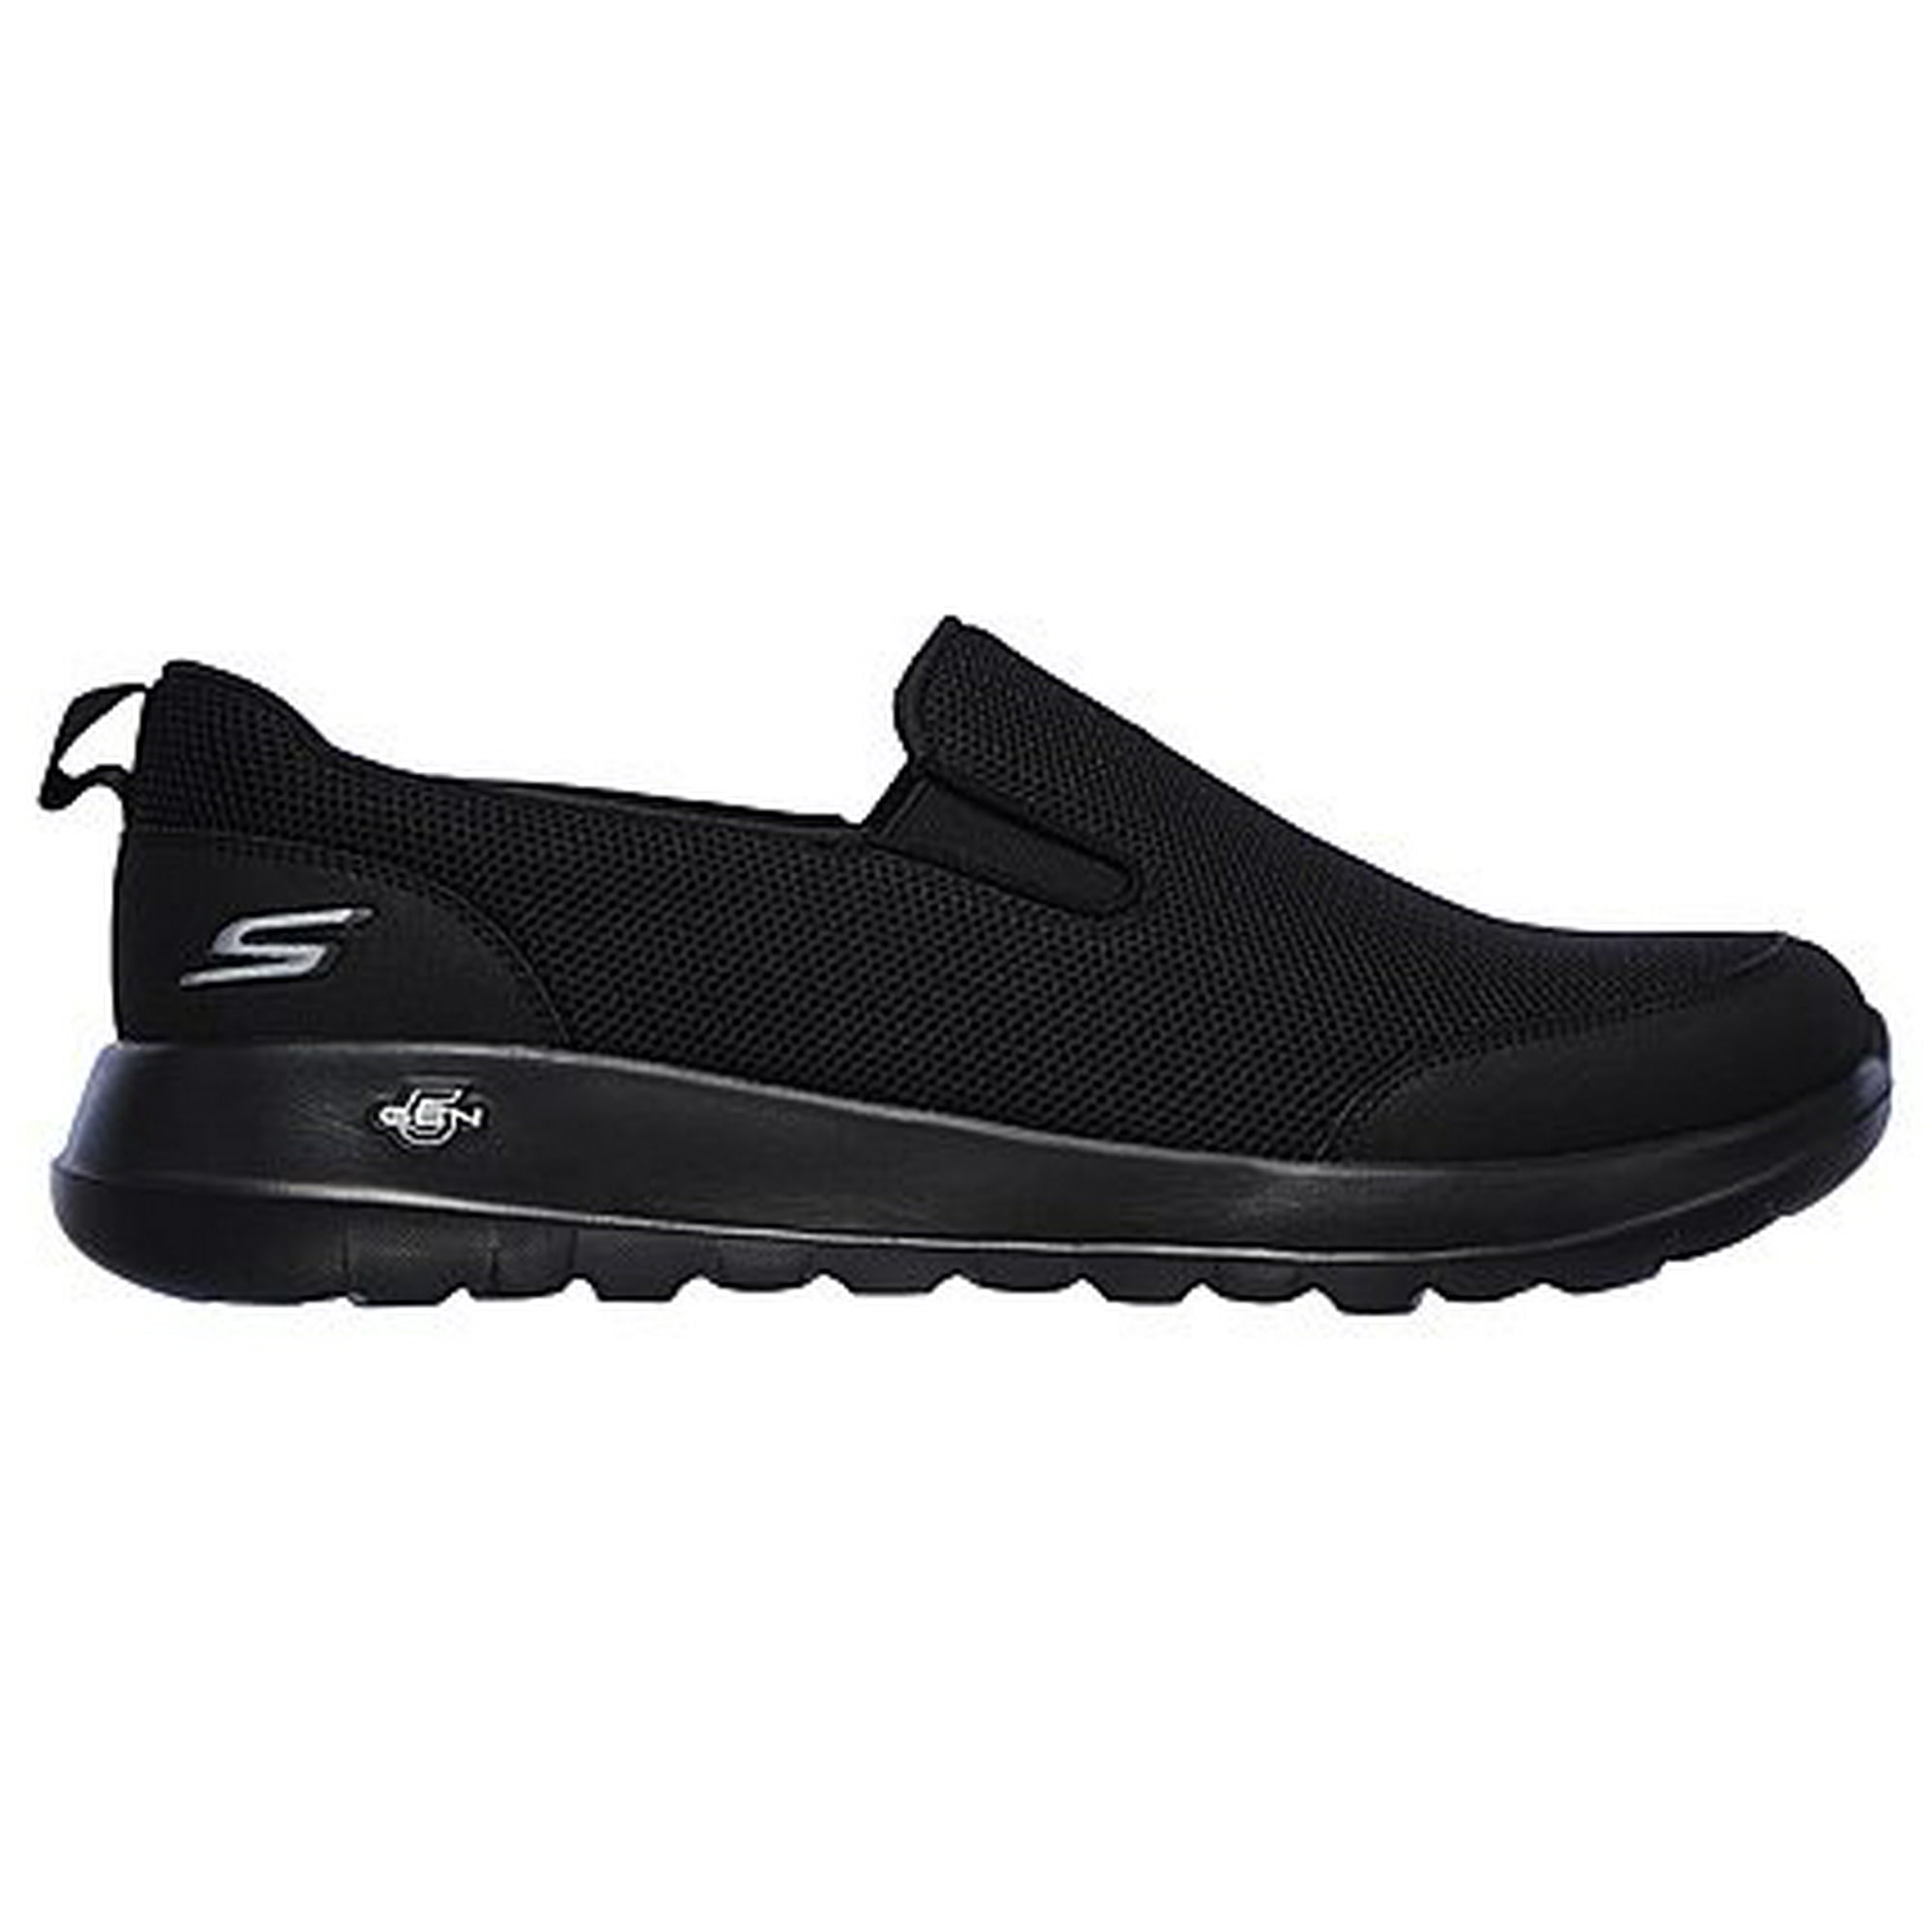 Skechers Men's Go Walk Max Clinched Comfort Sneaker (Wide Width Available) - Walmart.com